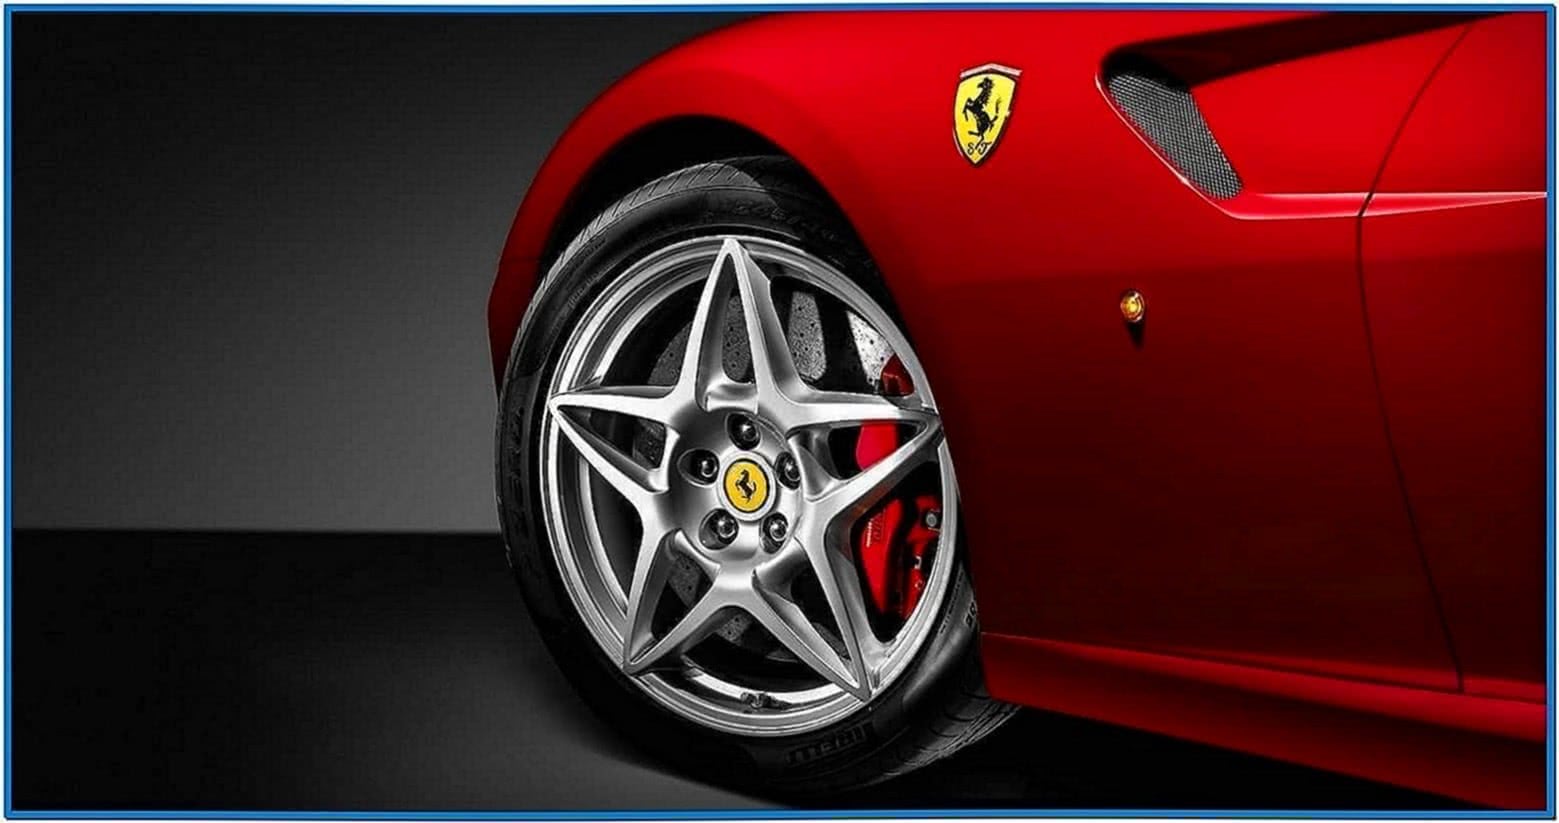 Ferrari Screensaver With Sound